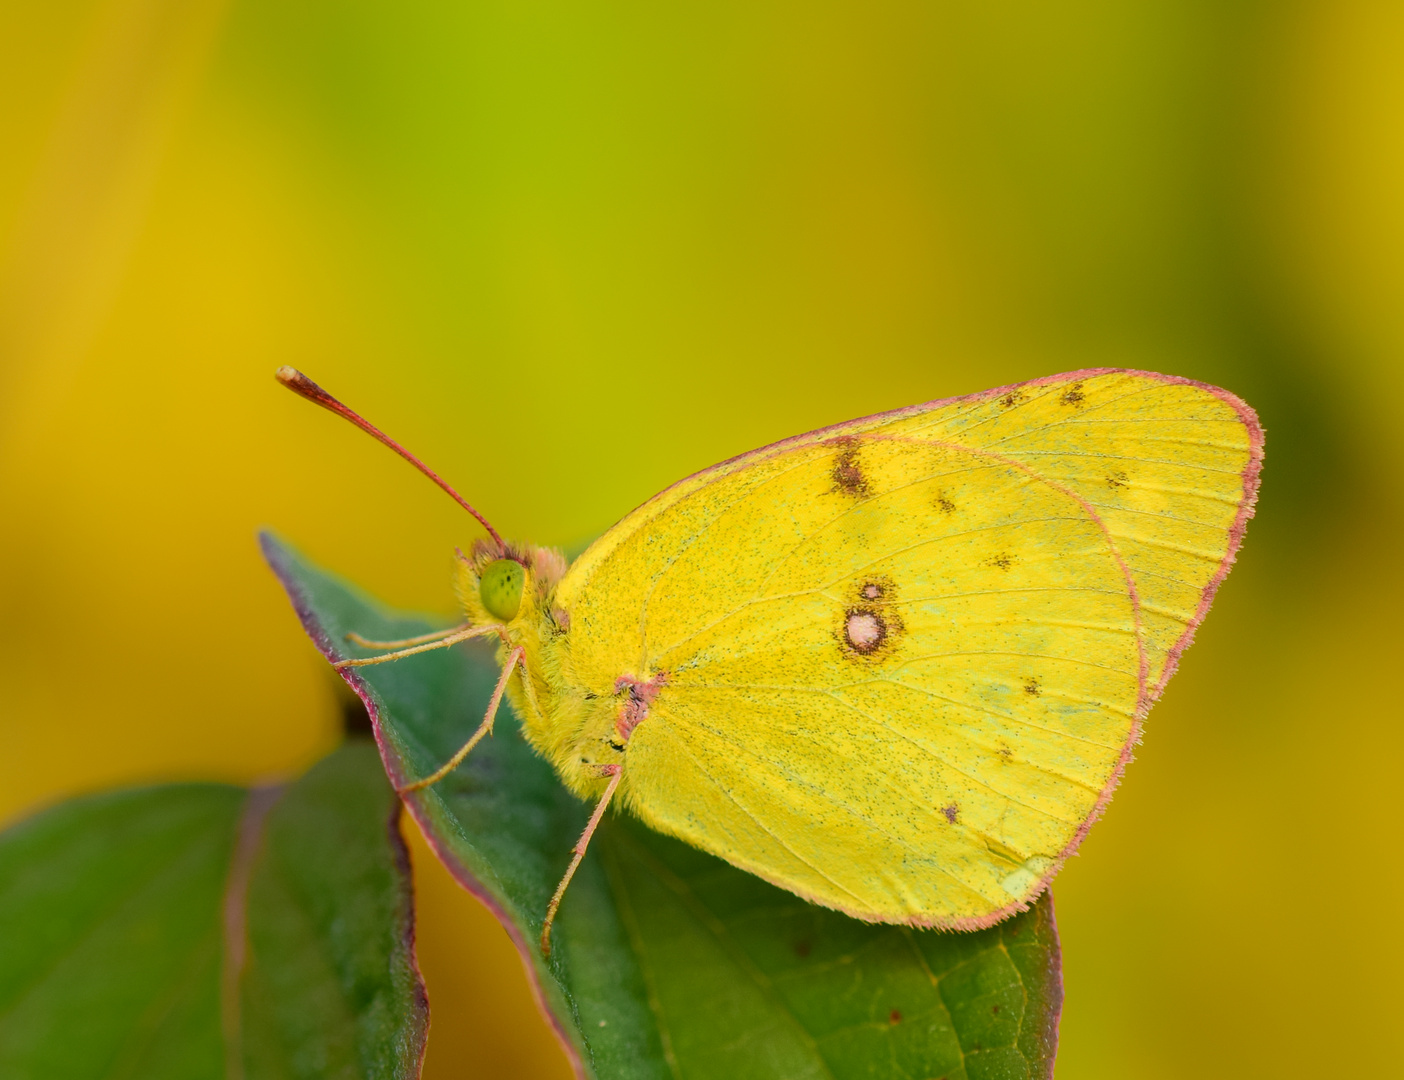 Butterfly like a fresh lemon